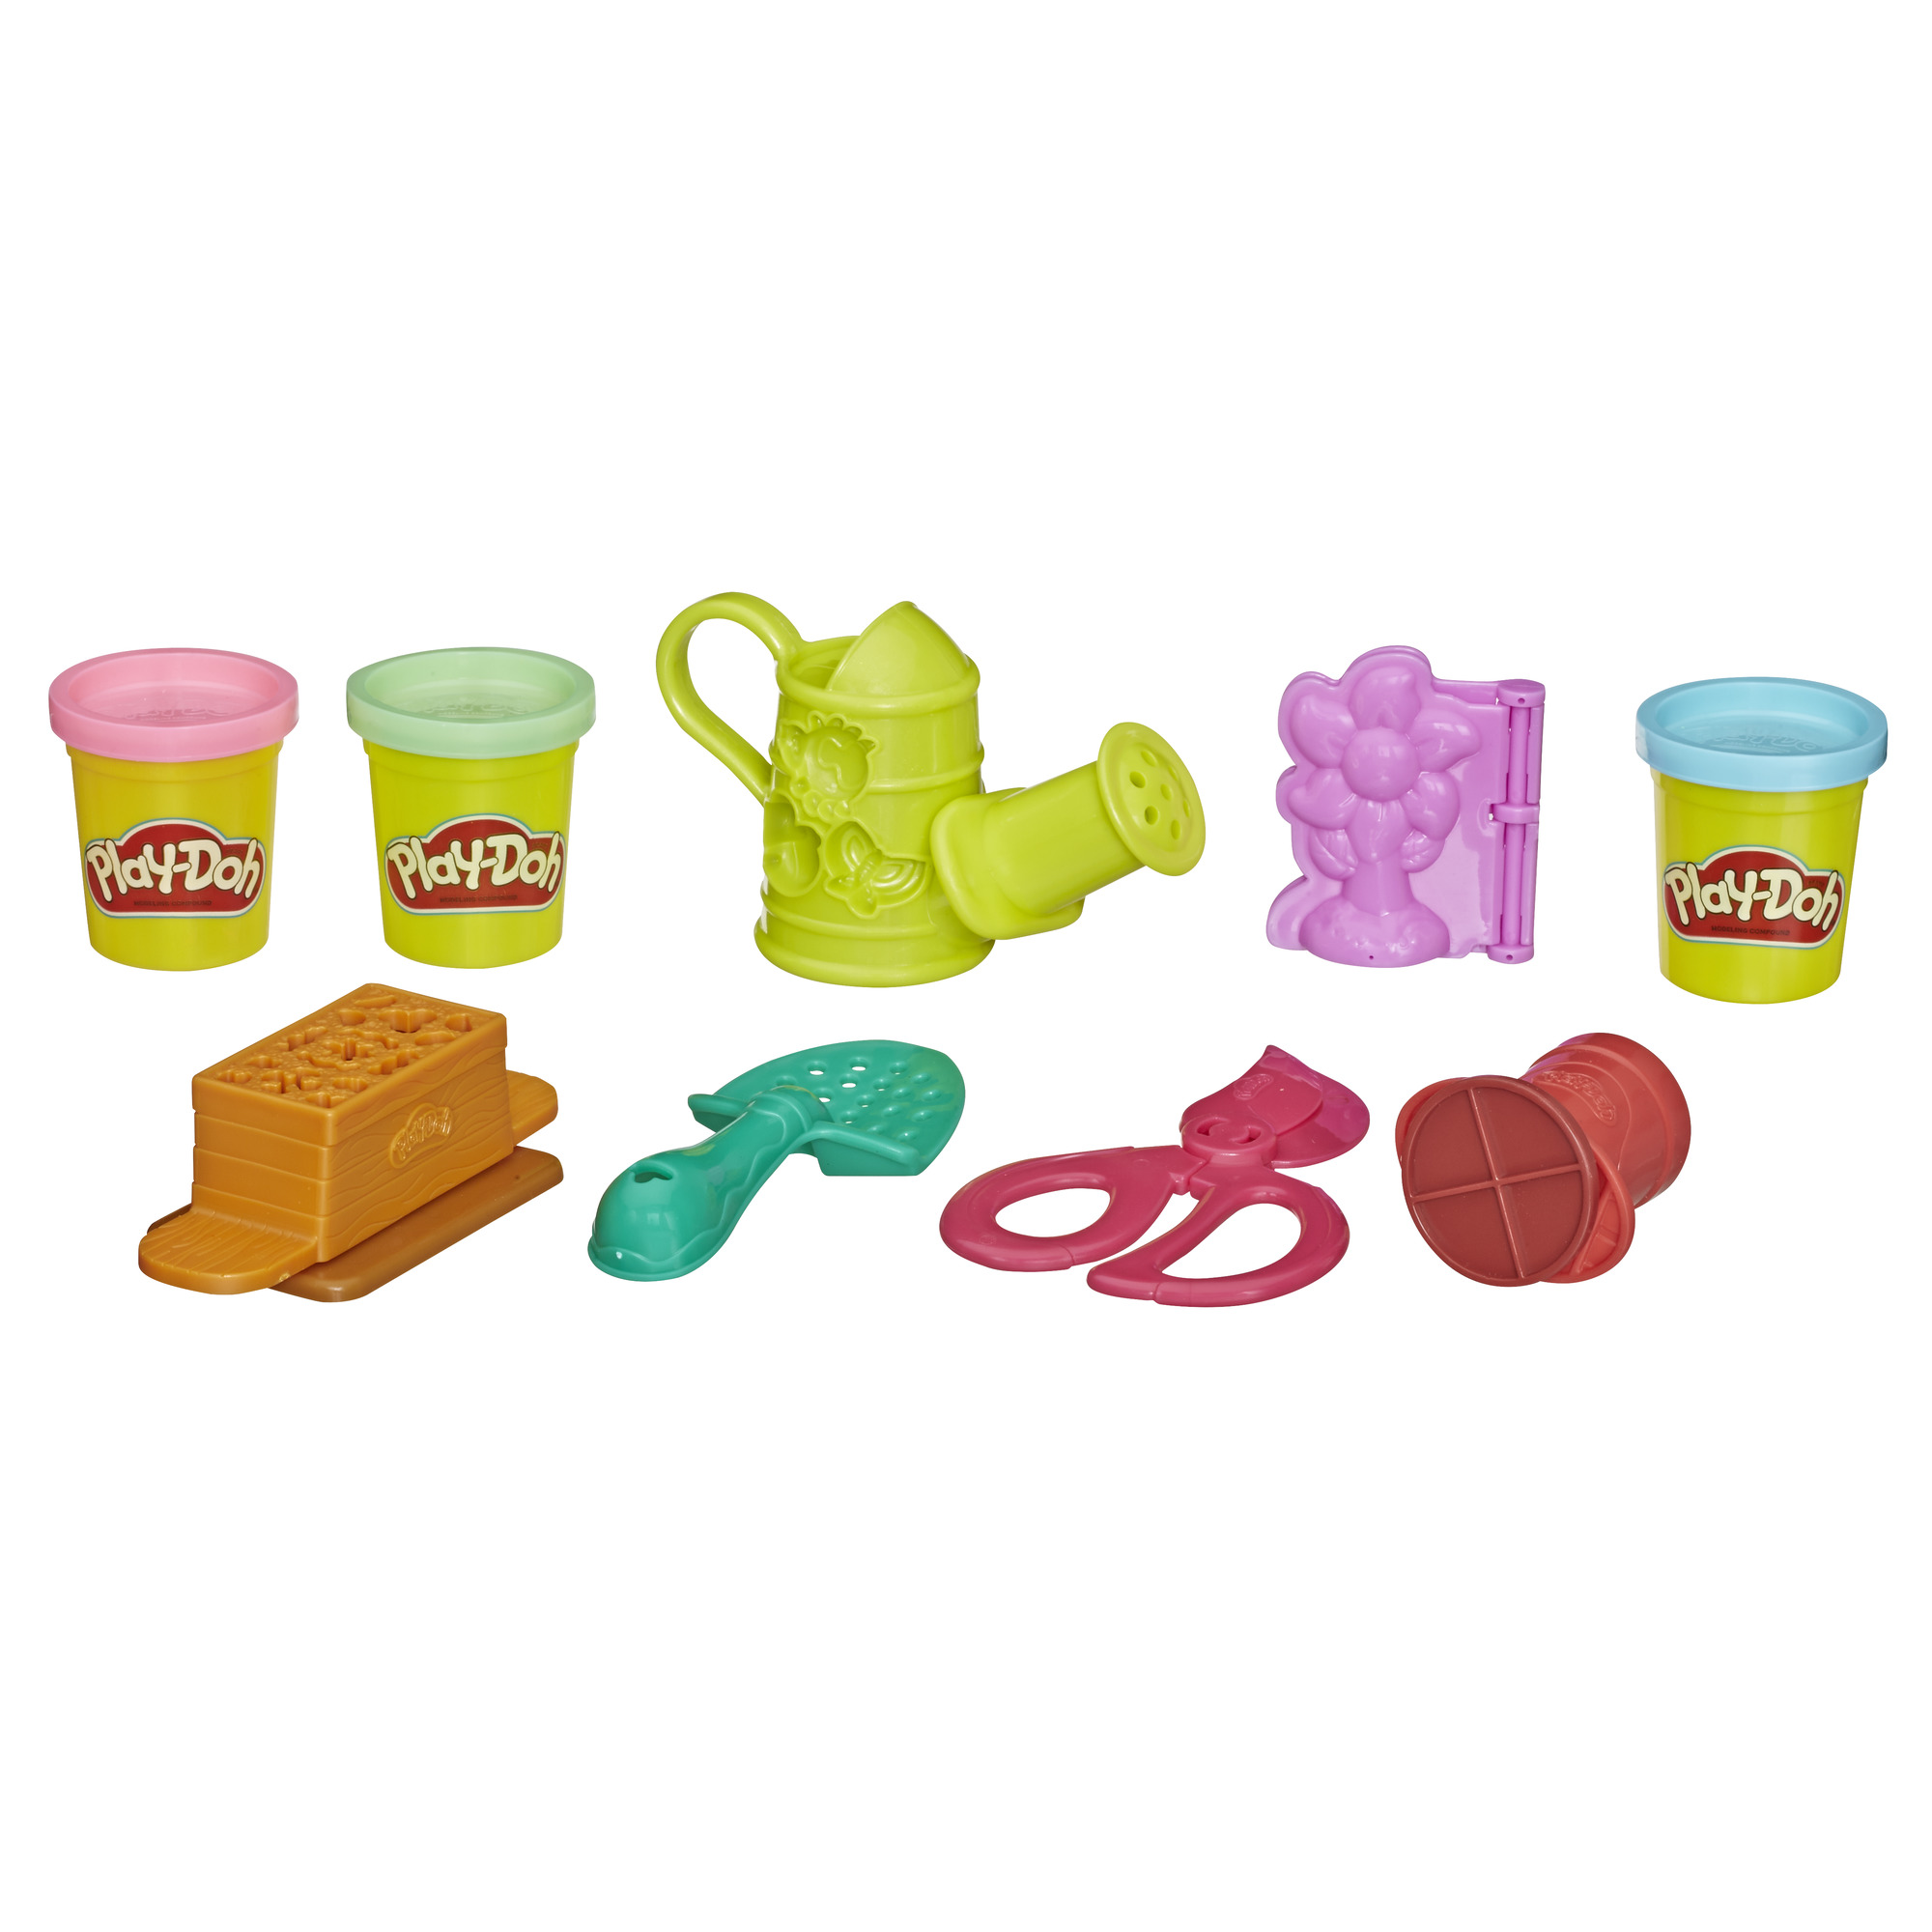 Купить наборы пластилина. Hasbro Play-Doh. Play Doh Хасбро. Play Doh садовые инструменты. Play-Doh игровой набор для лепки инструменты e3342.